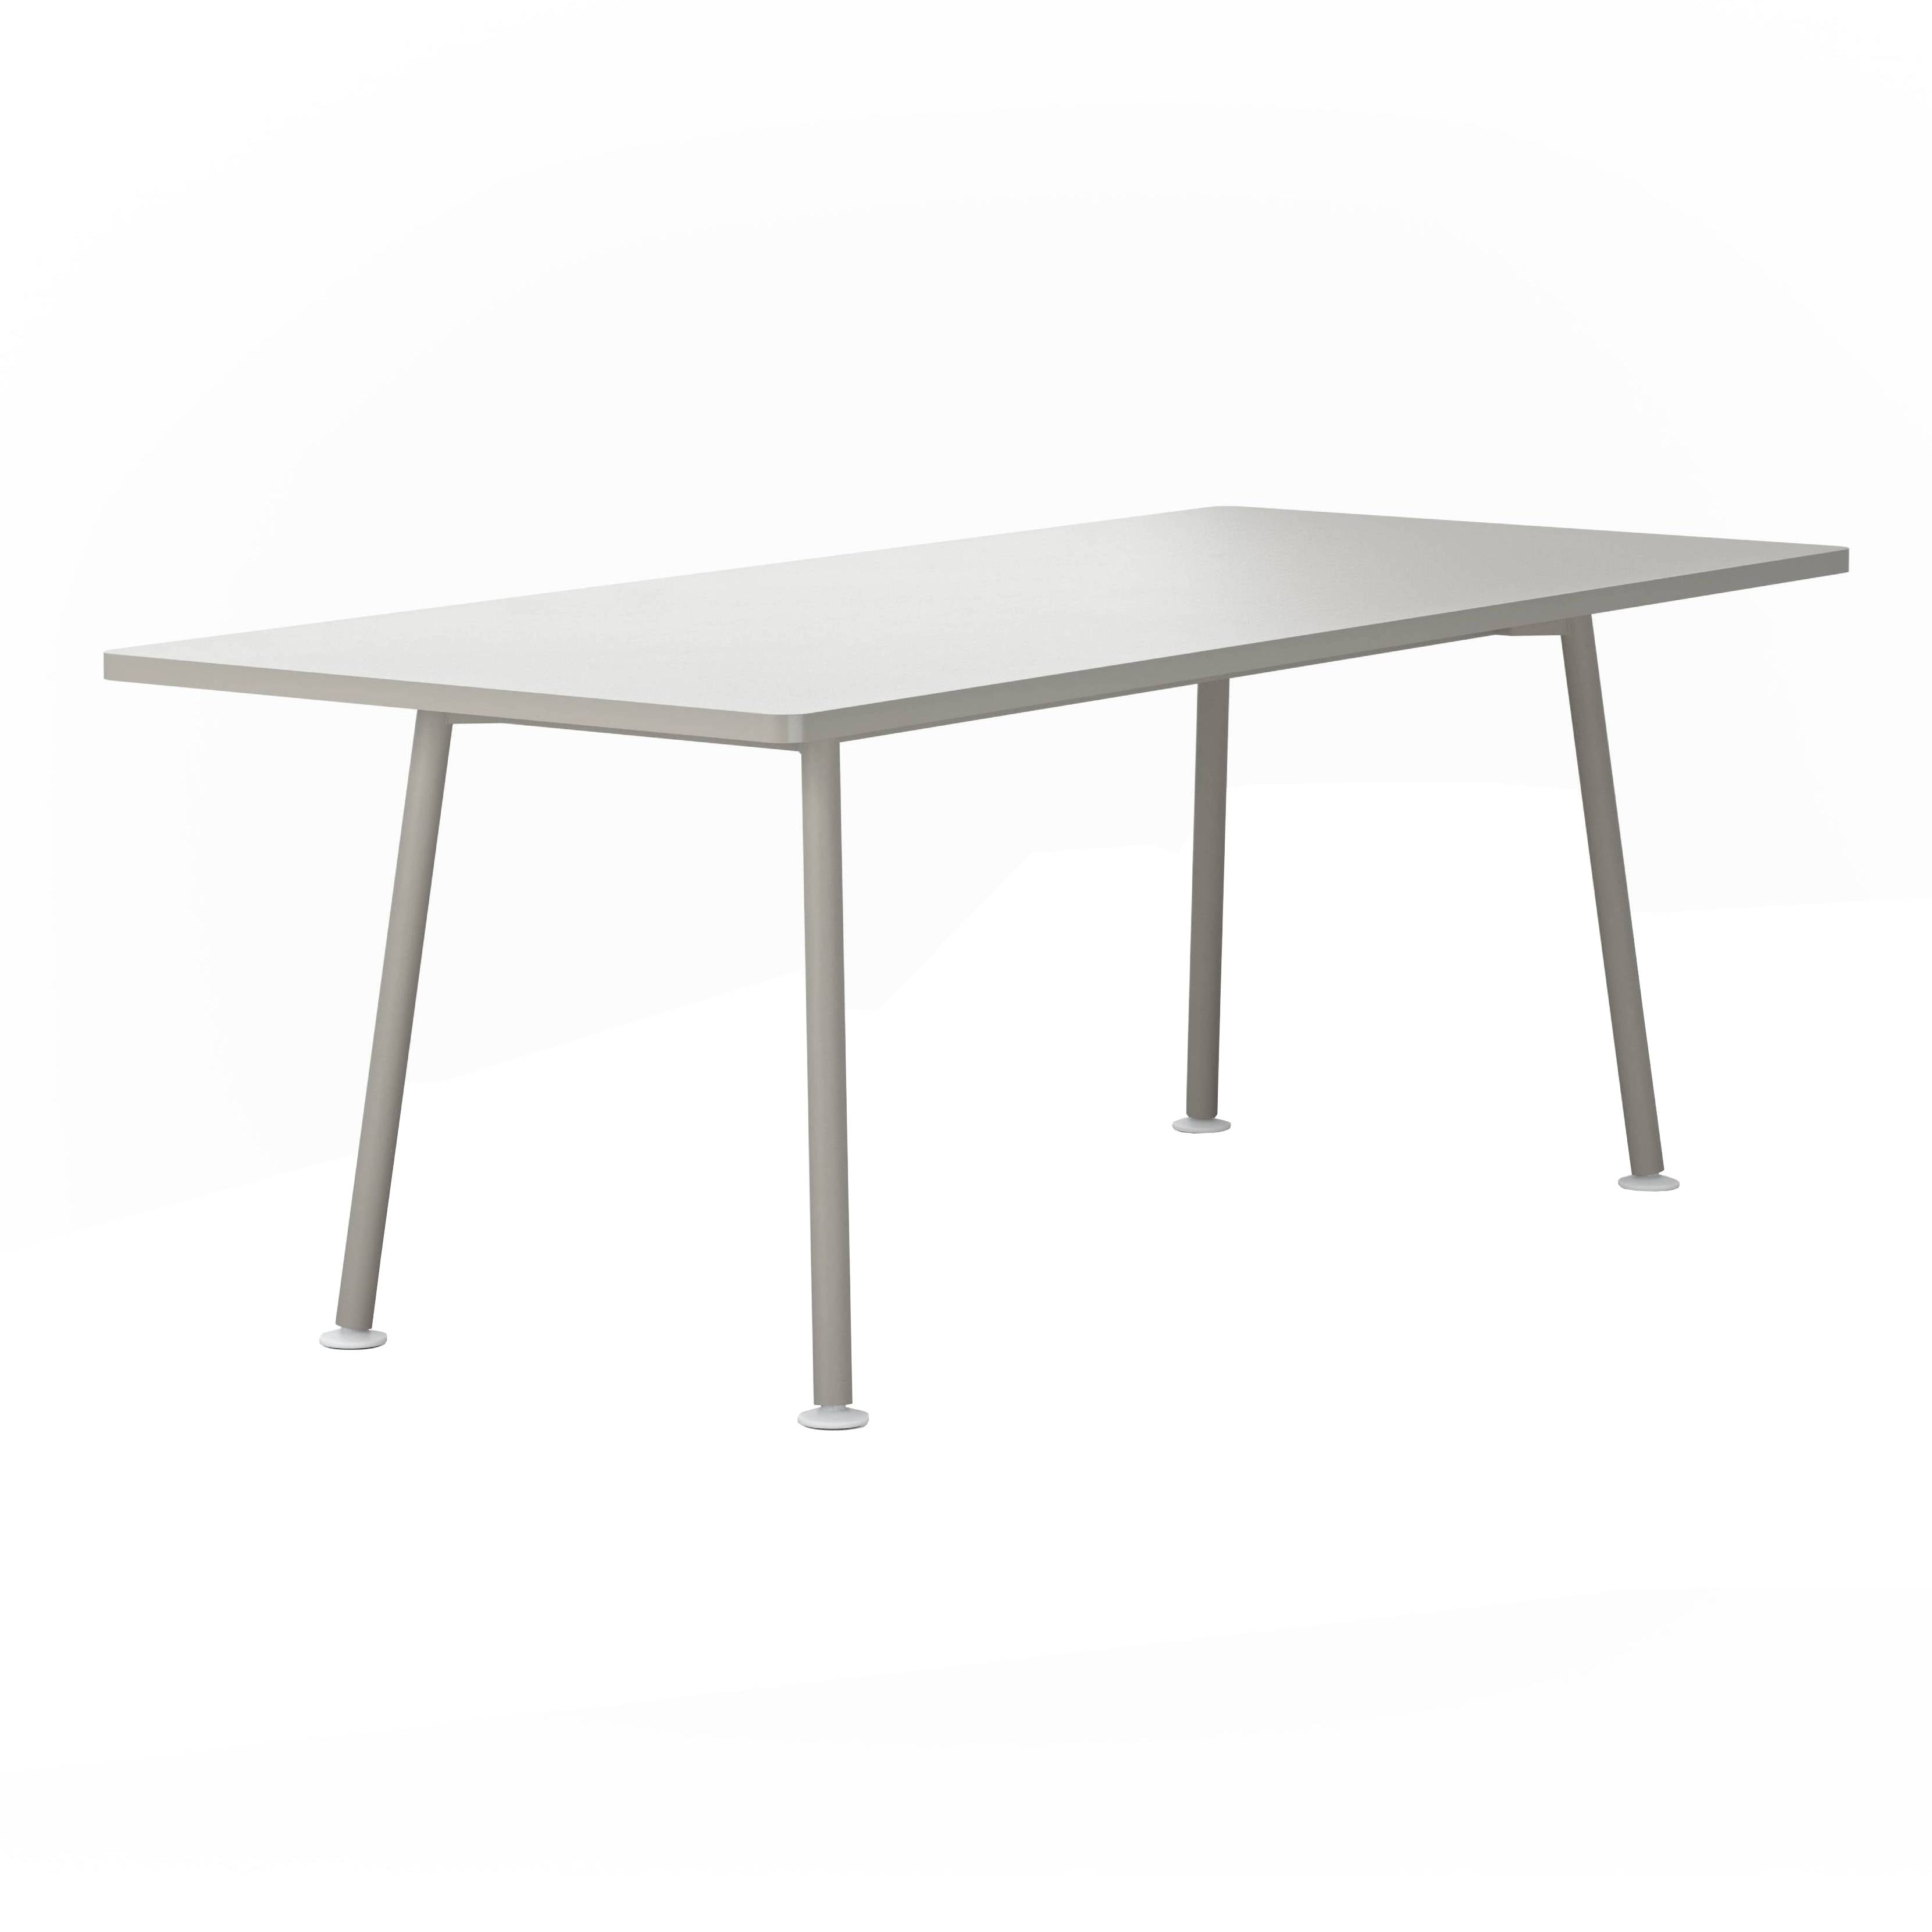 Landa Table: Counter + Small - 78.7